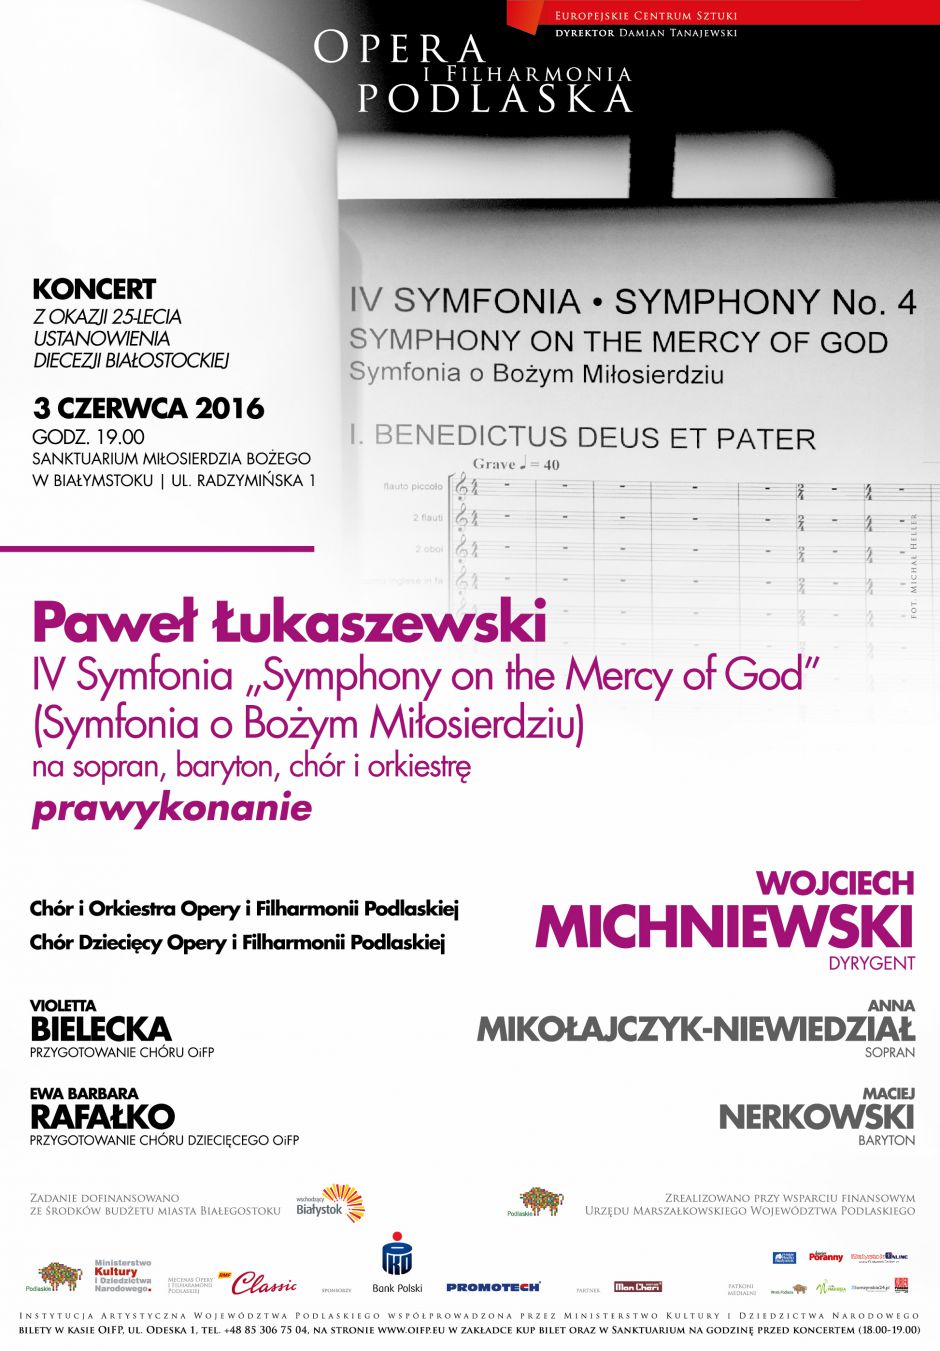 Koncert oratoryjny z okazji 25-lecia ustanowienia Diecezji Białostockiej